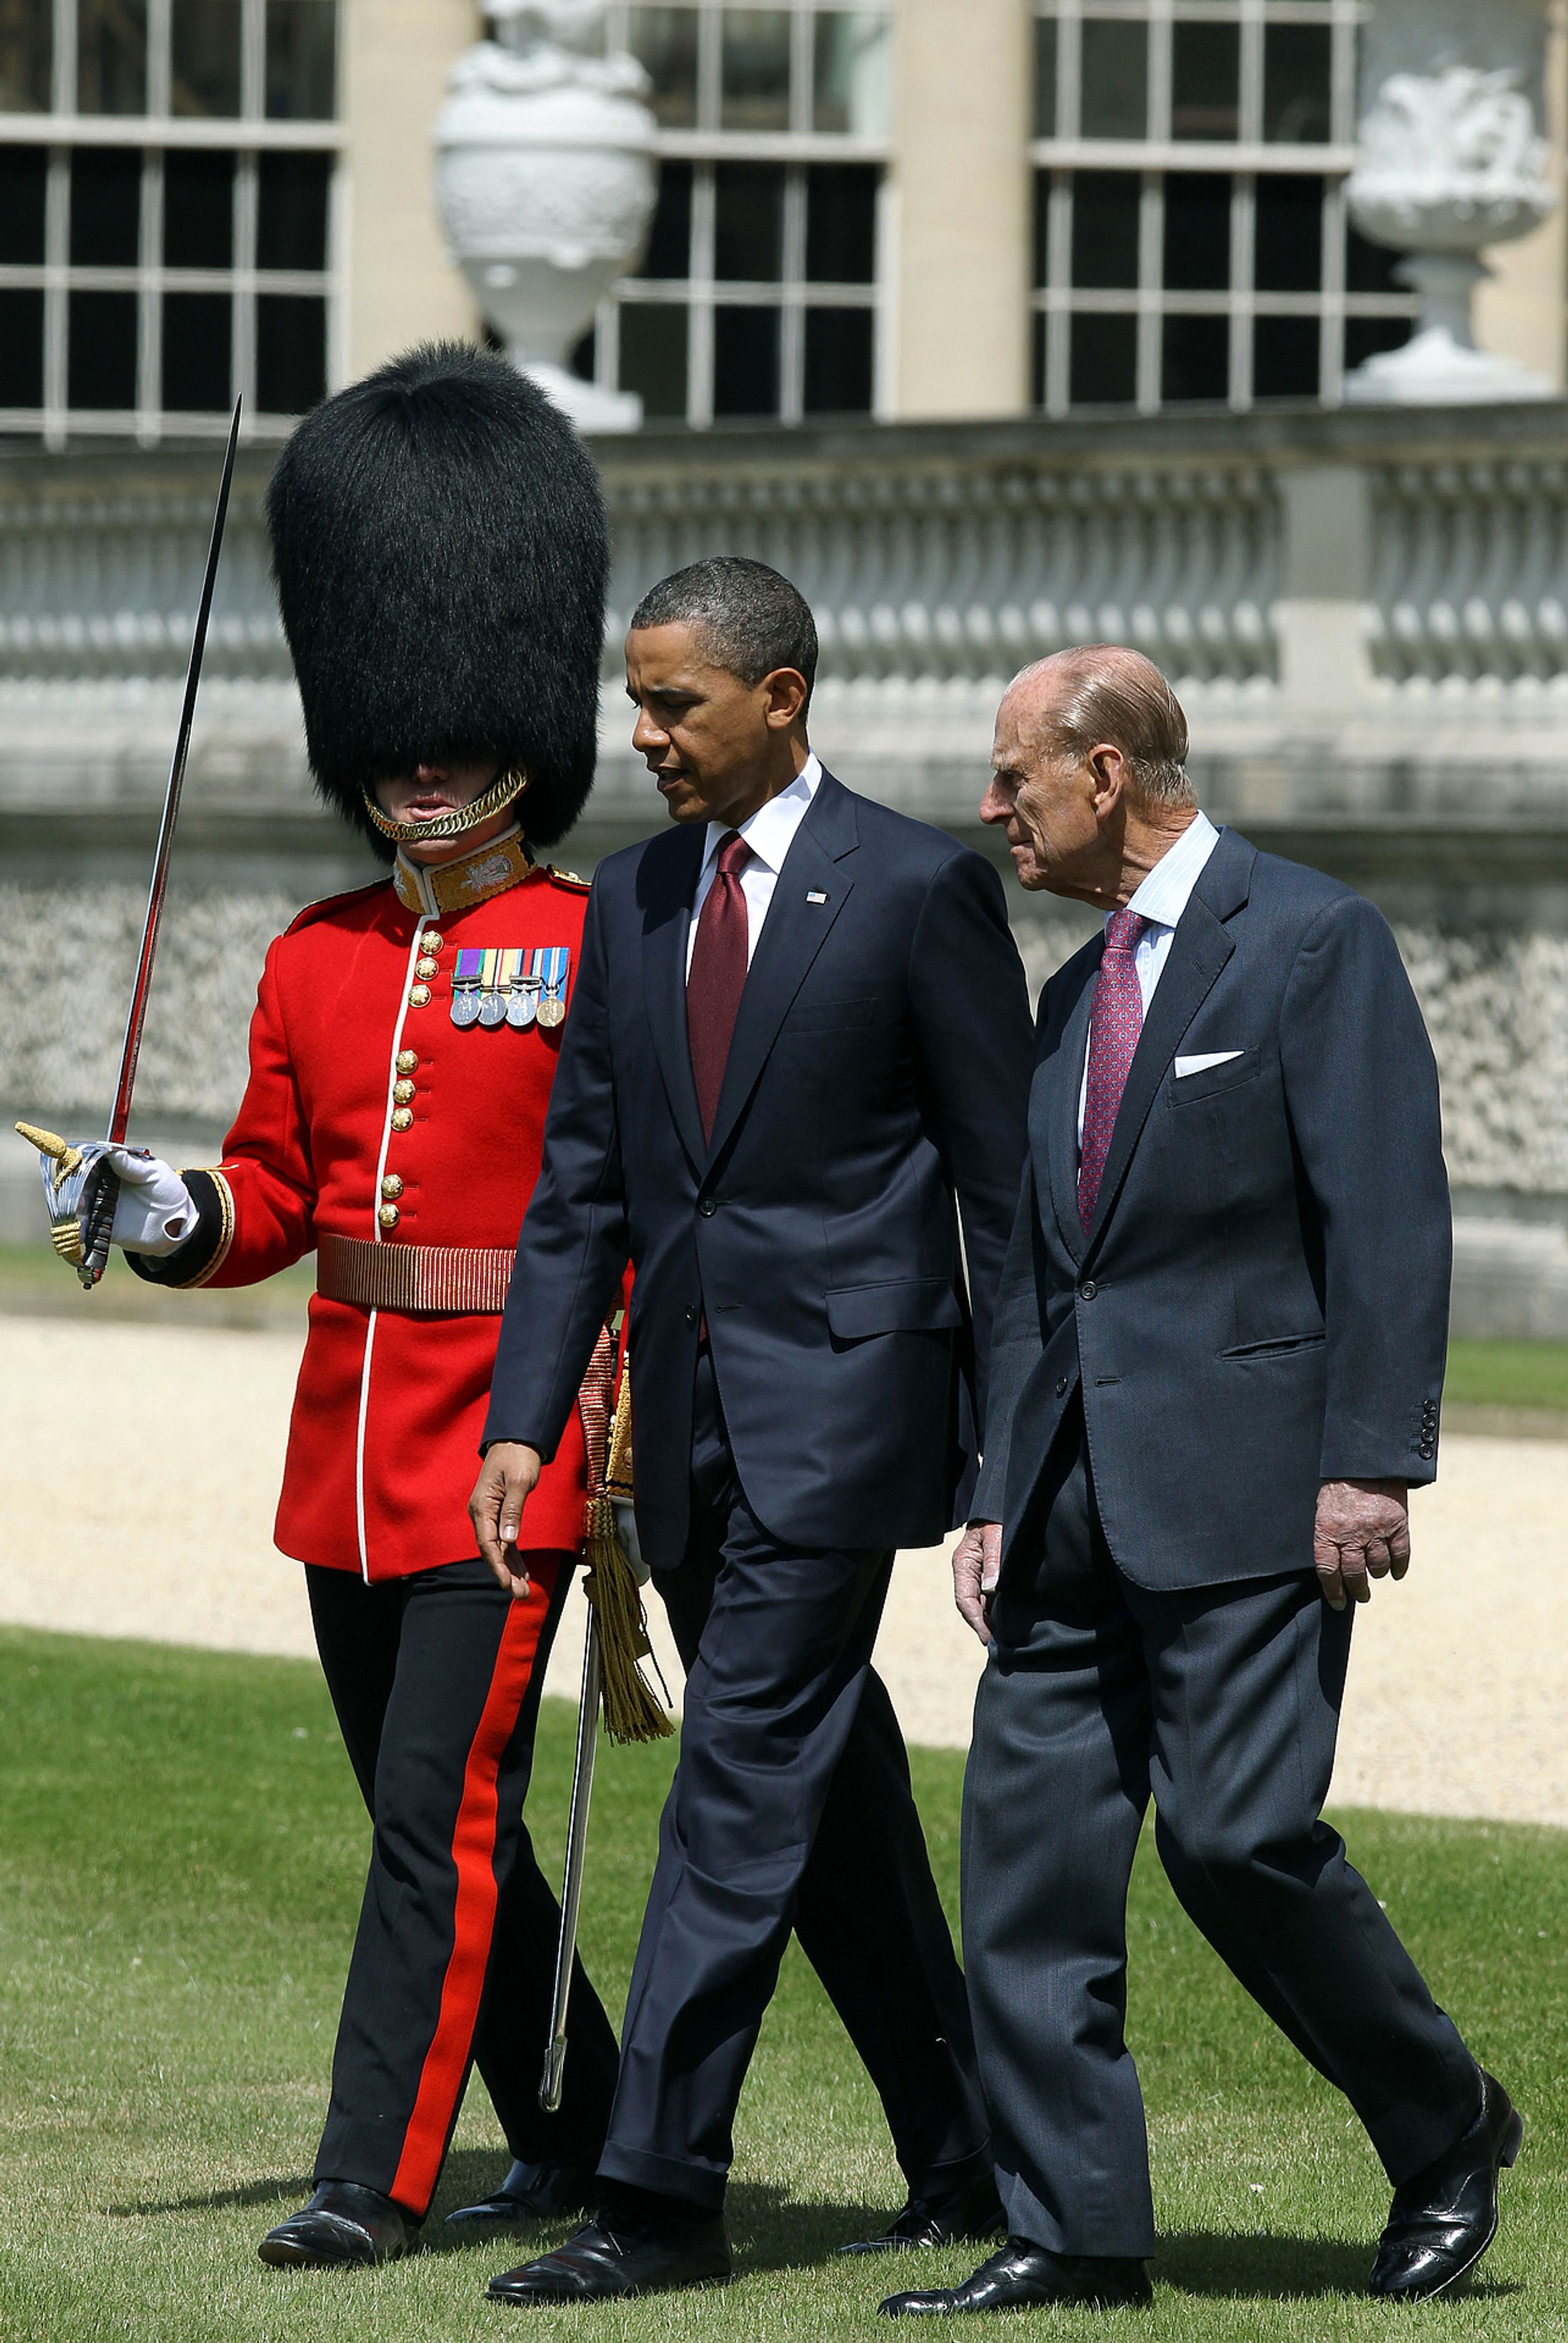 In 2011 bracht toenmalig president van Amerika Barack Obama een staatsbezoek aan Engeland daar ontmoette hij ook Philip.